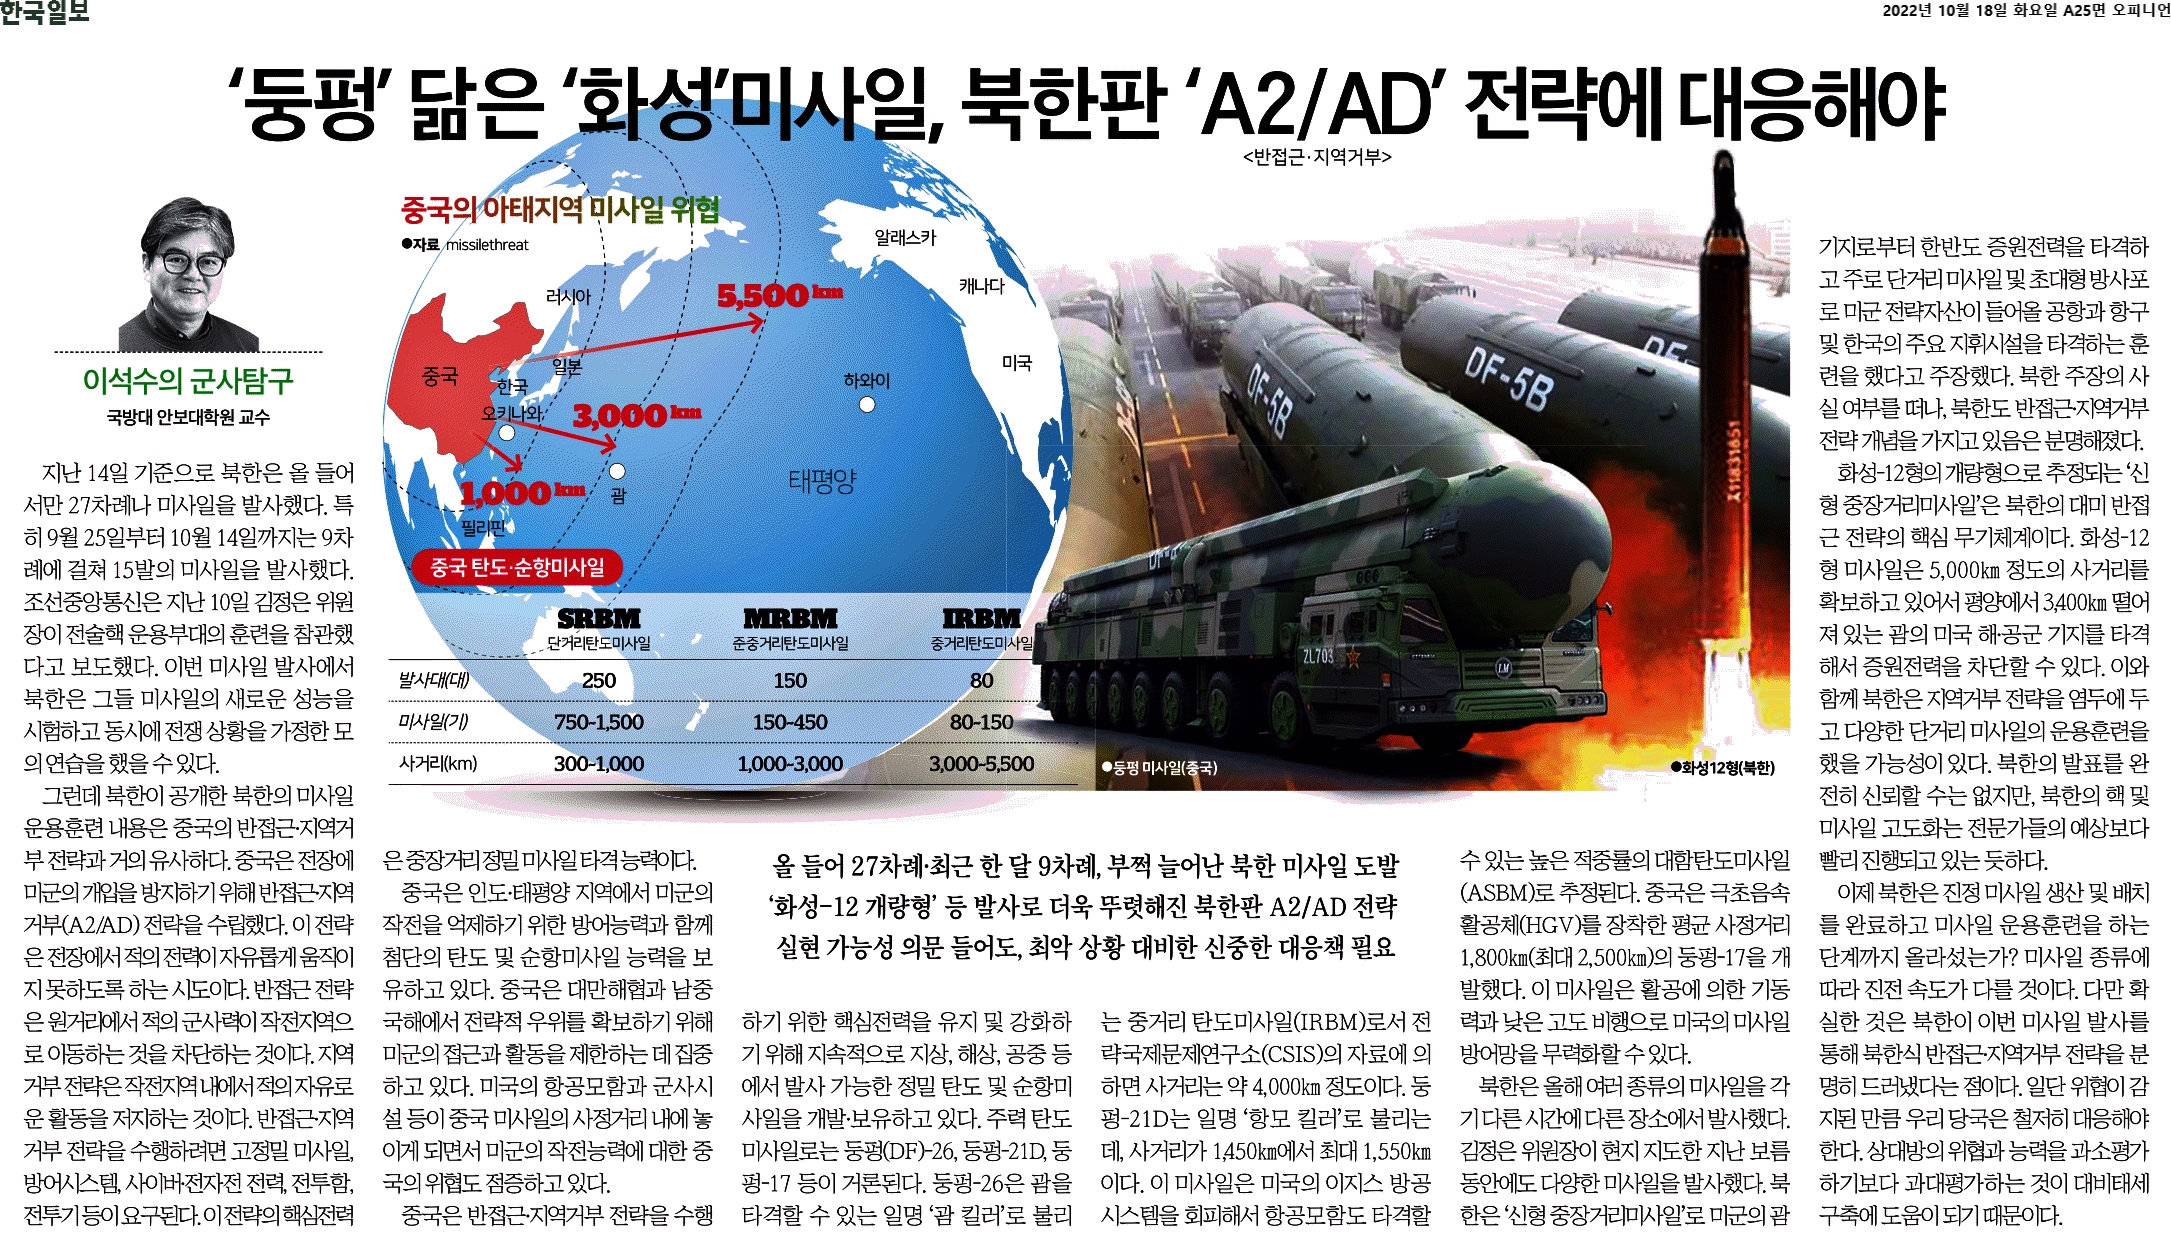 ‘둥펑’ 닮은 ‘화성’미사일, 북한판 ‘ A2AD’ 전략에 대응해야